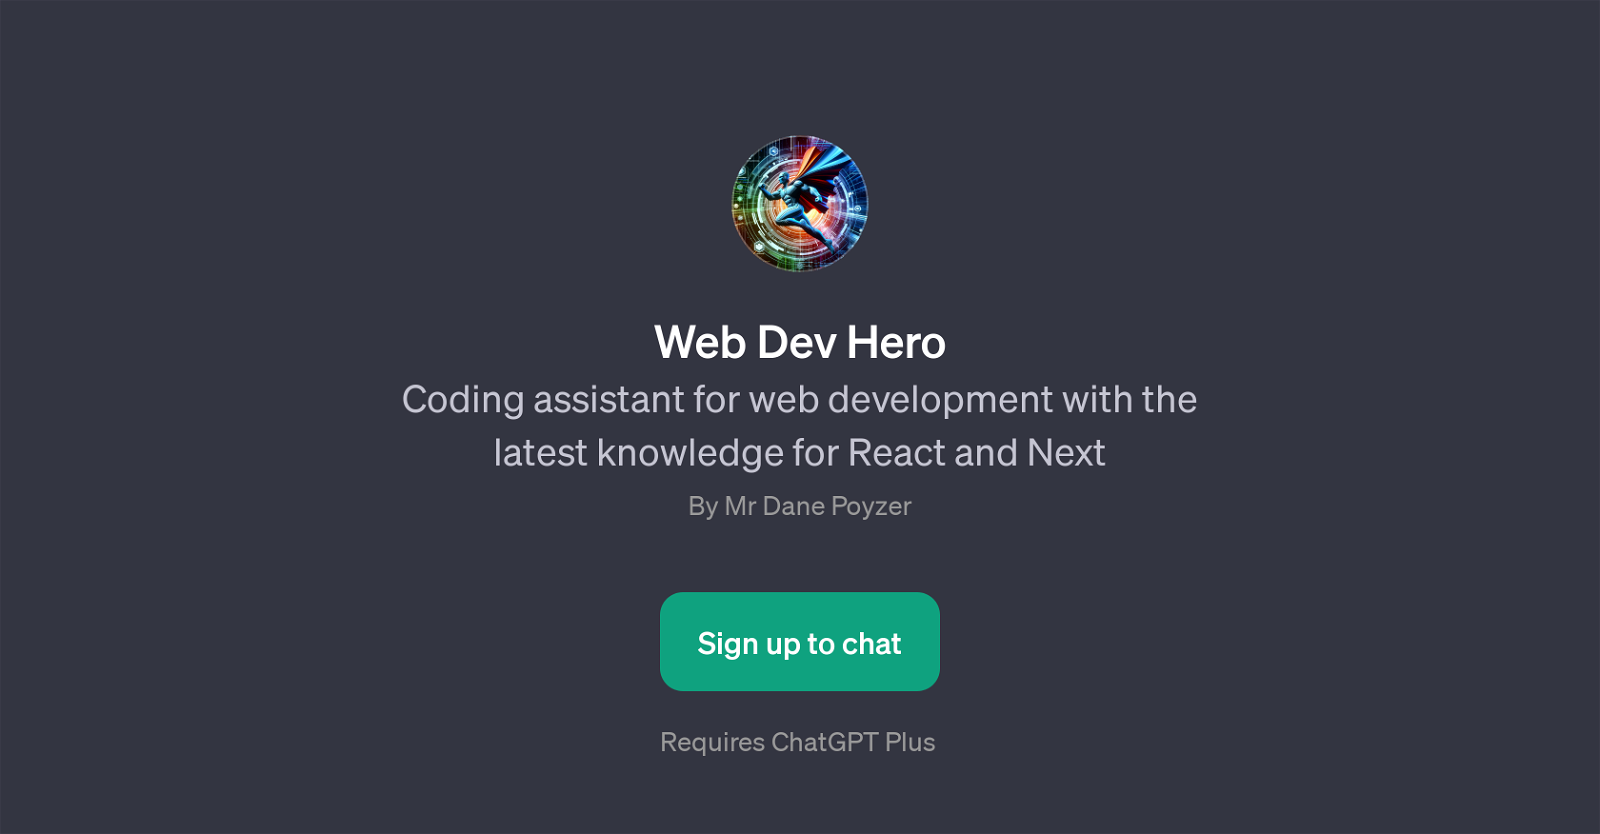 Web Dev Hero website